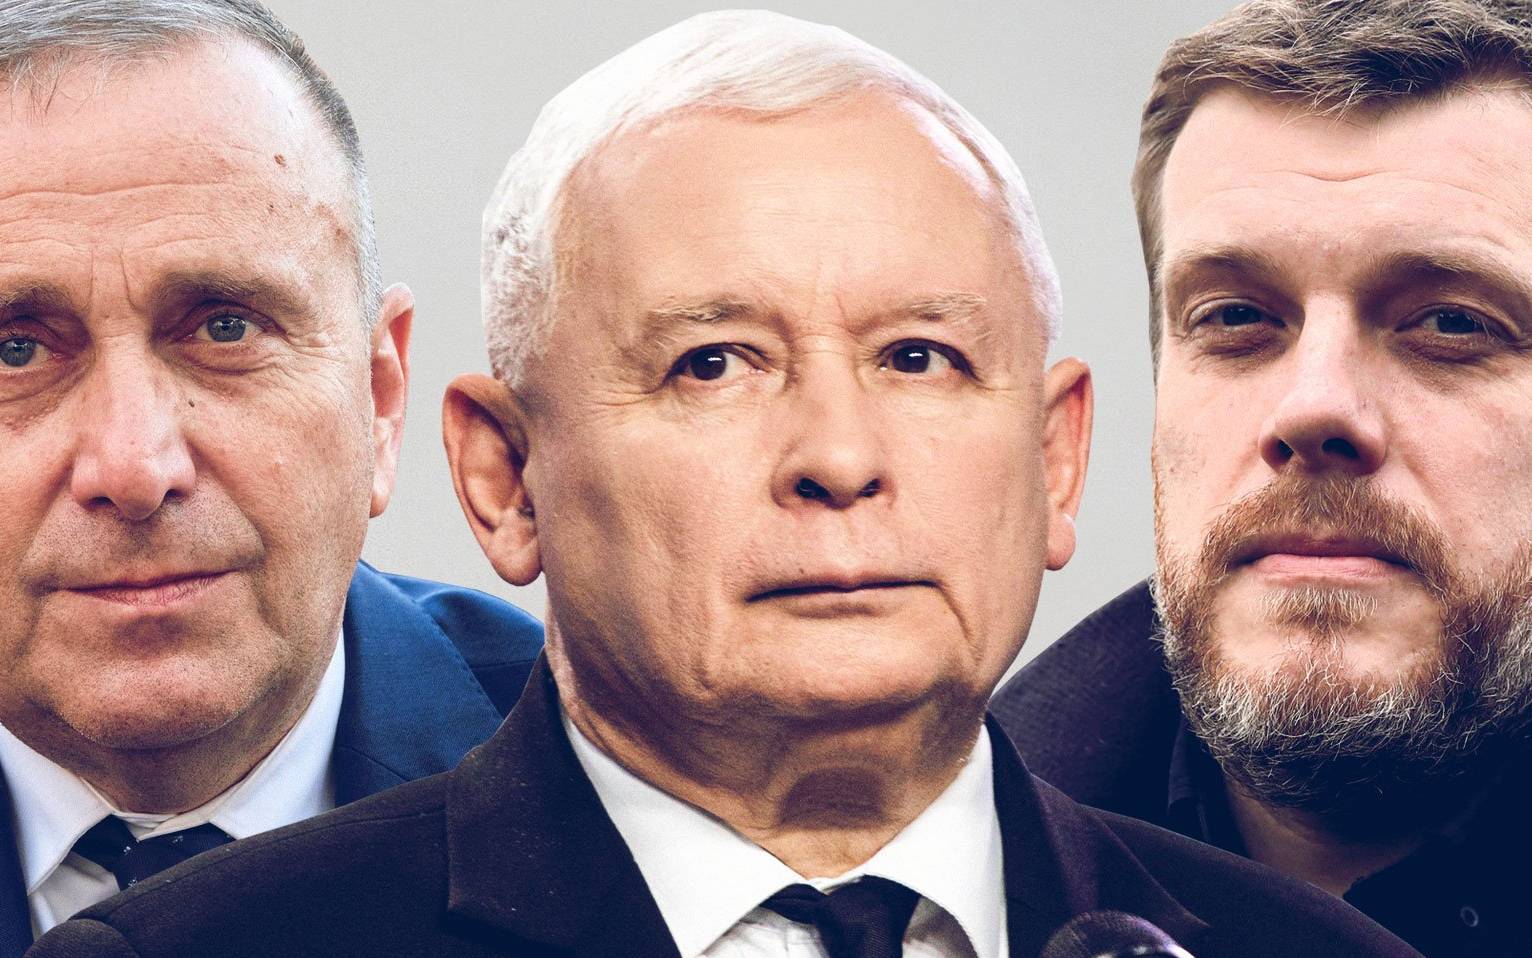 Grafika do artykułu Kaczyński: "Rzeczy, które nam zagrażają". Zandberg: "Trzecia siła". Schetyna: "Będę integrować"